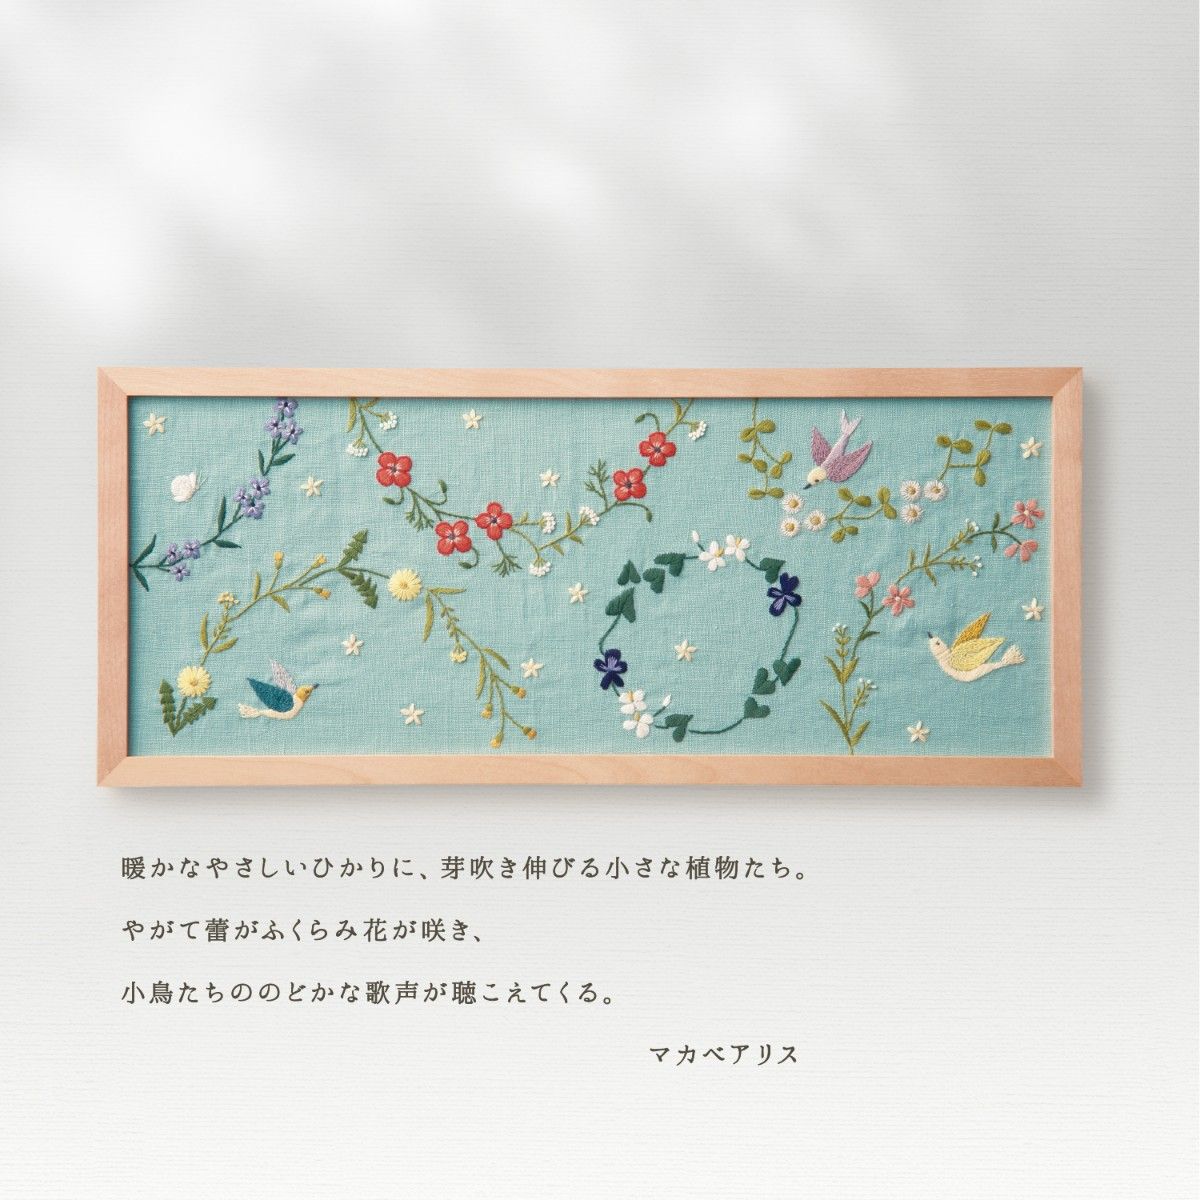 マカベアリス 刺繍  キット  Olympus (オリムパス)  ひかりの風景 春のひかり